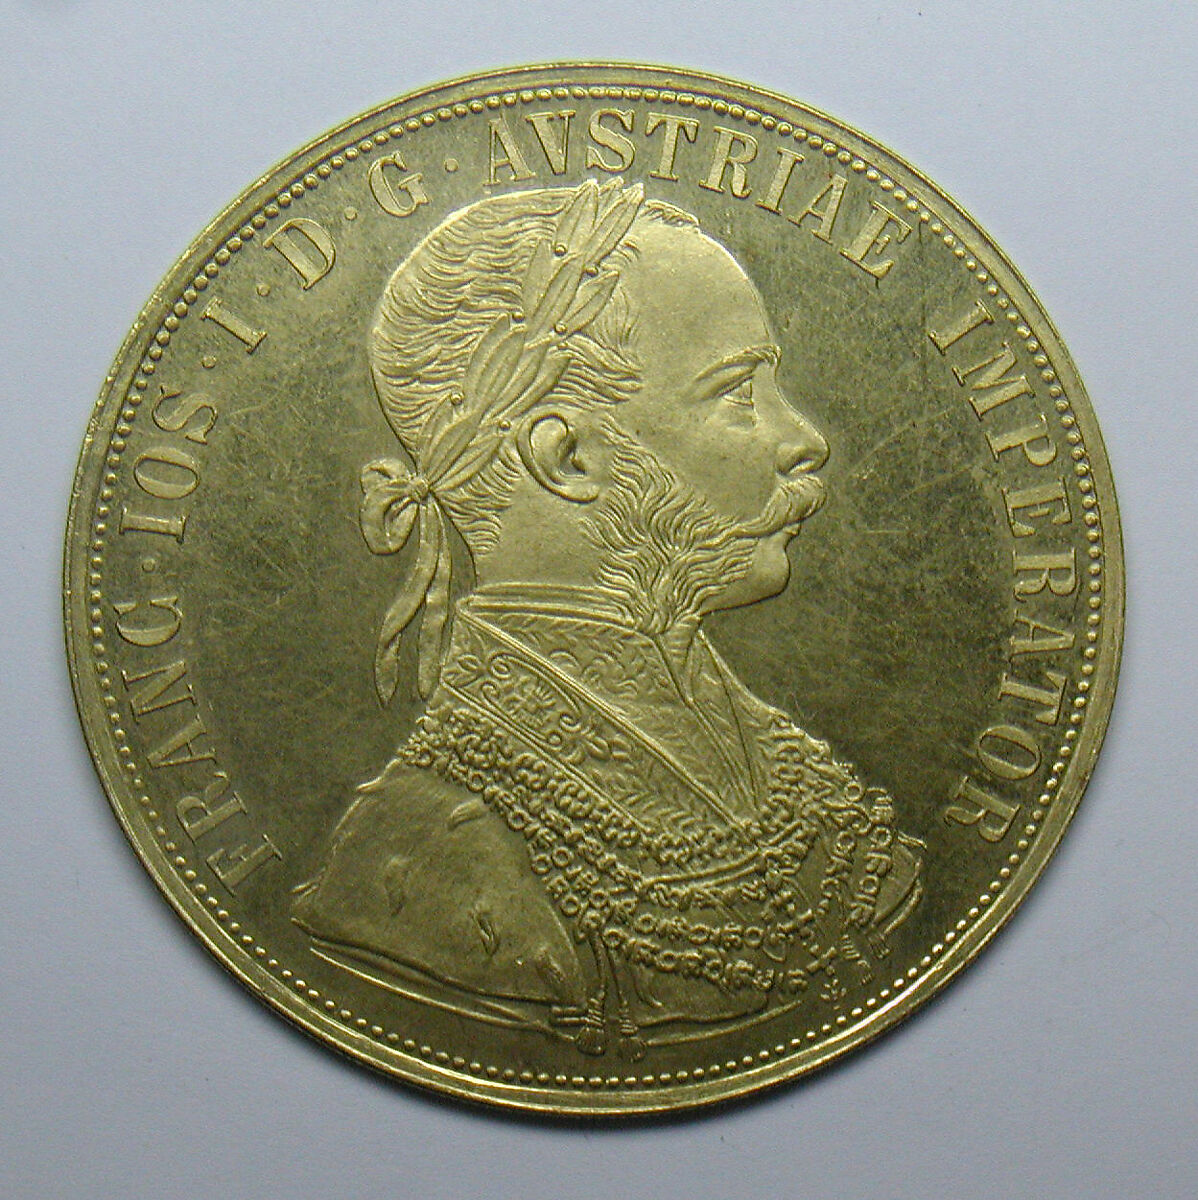 Quad ducat of Francis Joseph I, Emperor of Austria, Gold, Austrian 